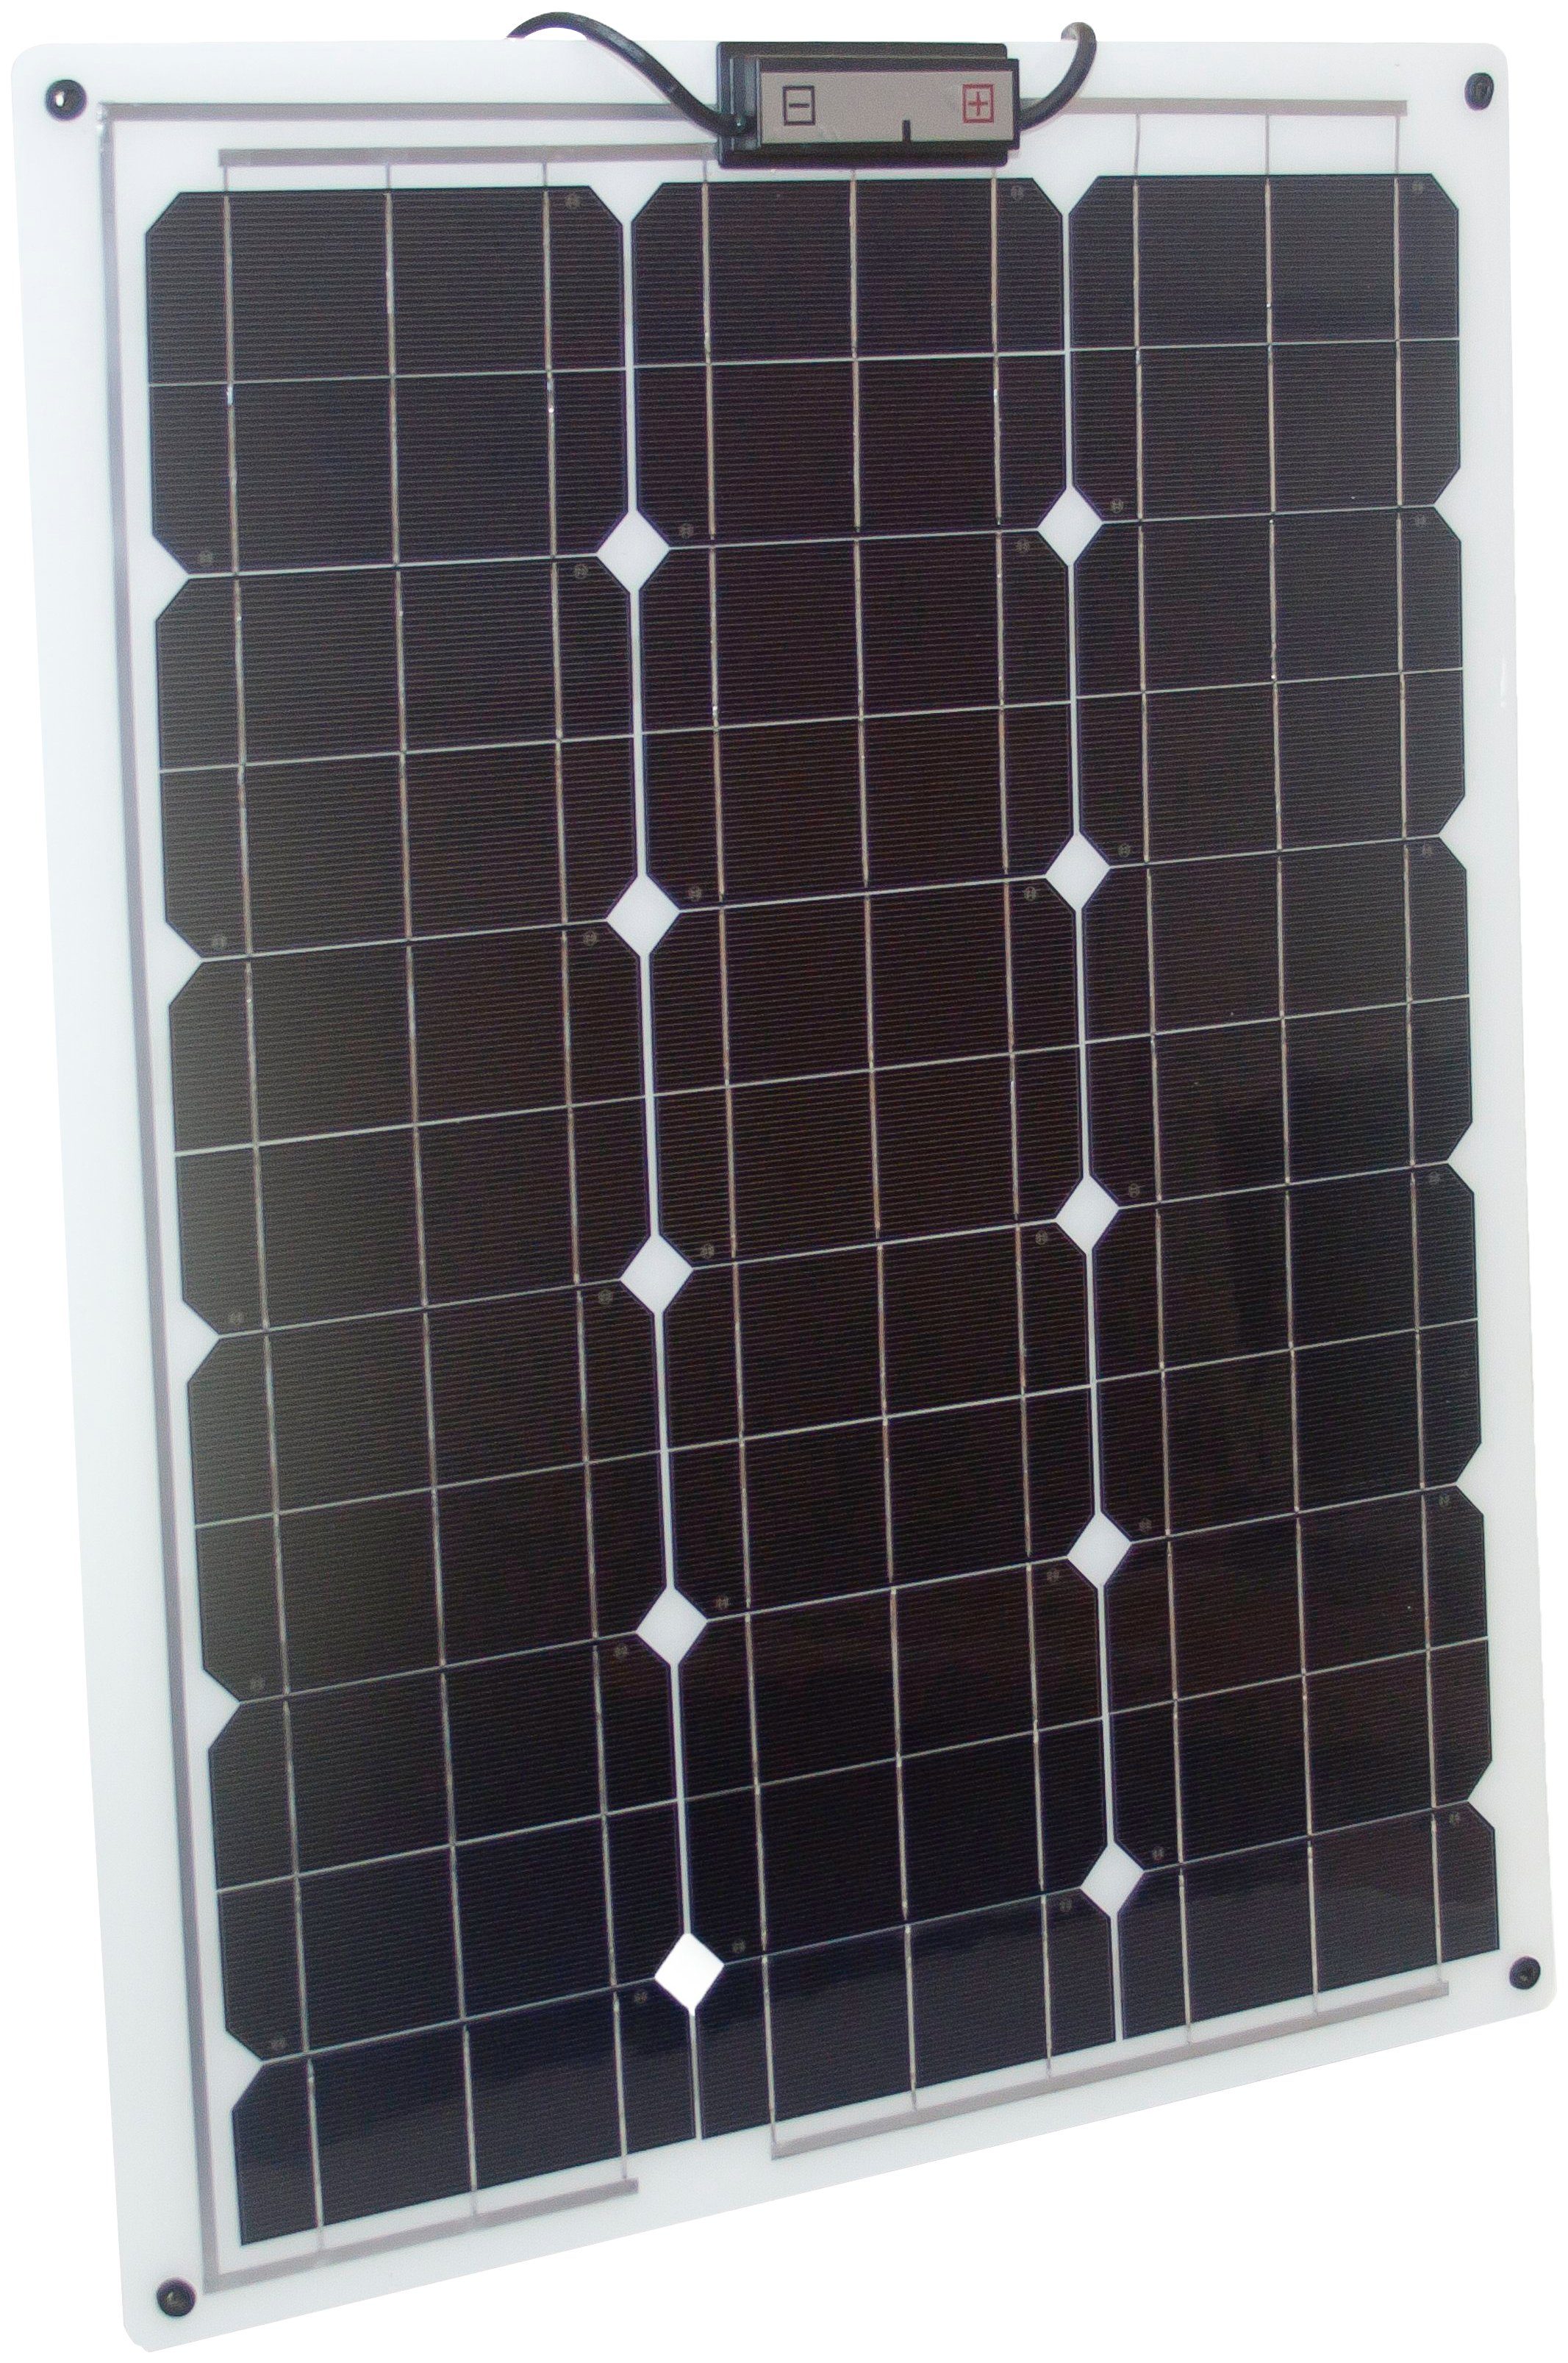 Sunset Solarmodul SM 50 L (Laminat), 50 Watt, 50 W, Polykristallin, für Boote und Yachten